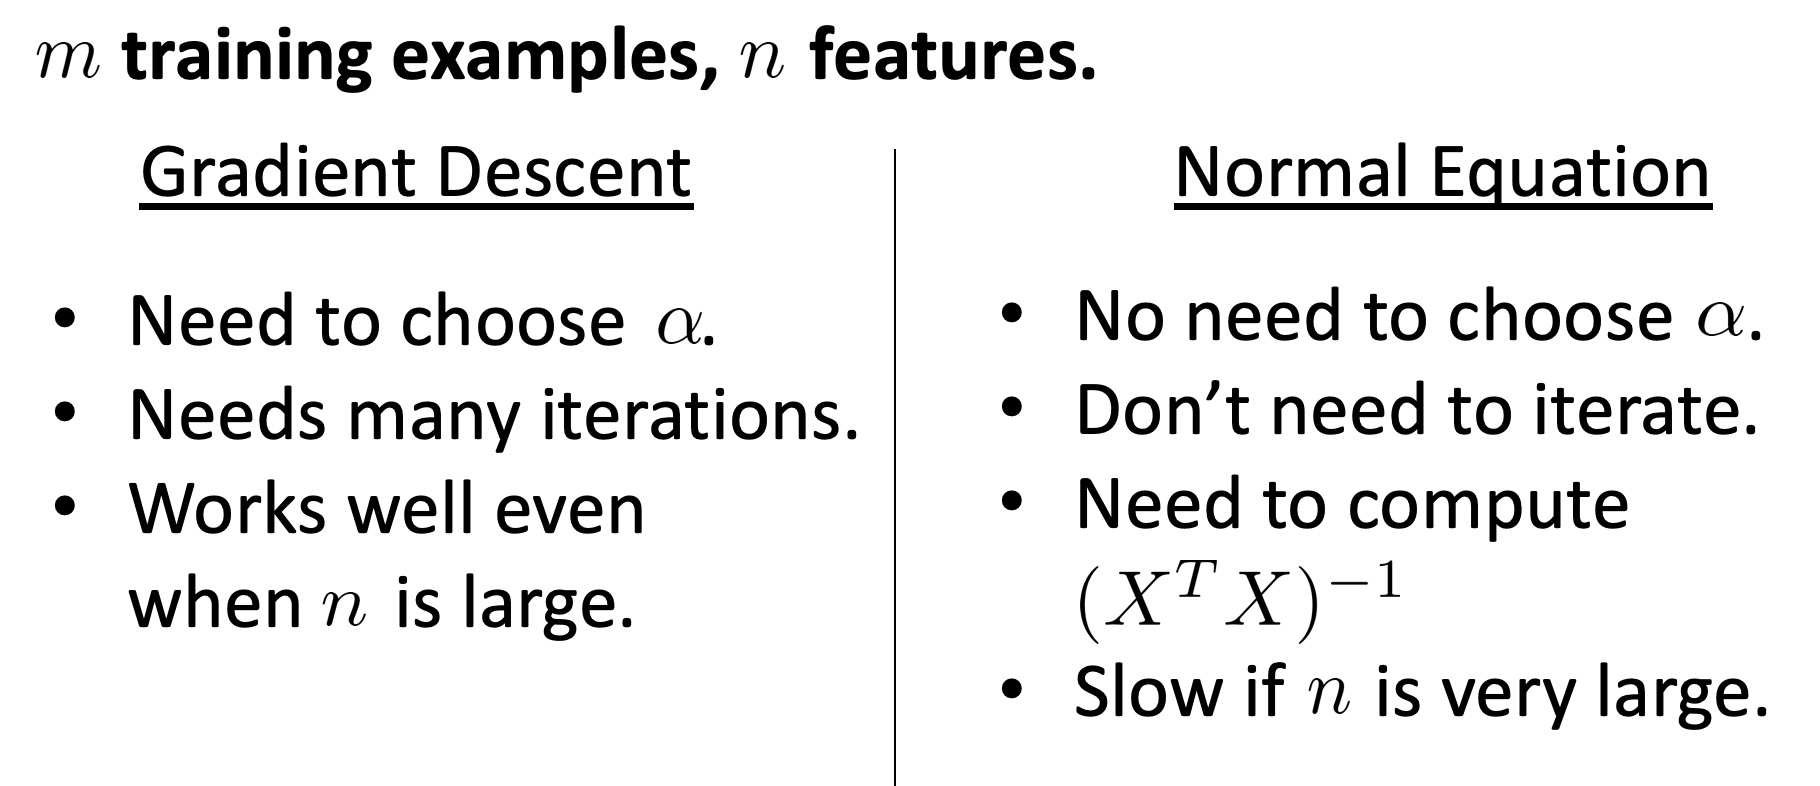 Gradient Descent vs Normal Equation